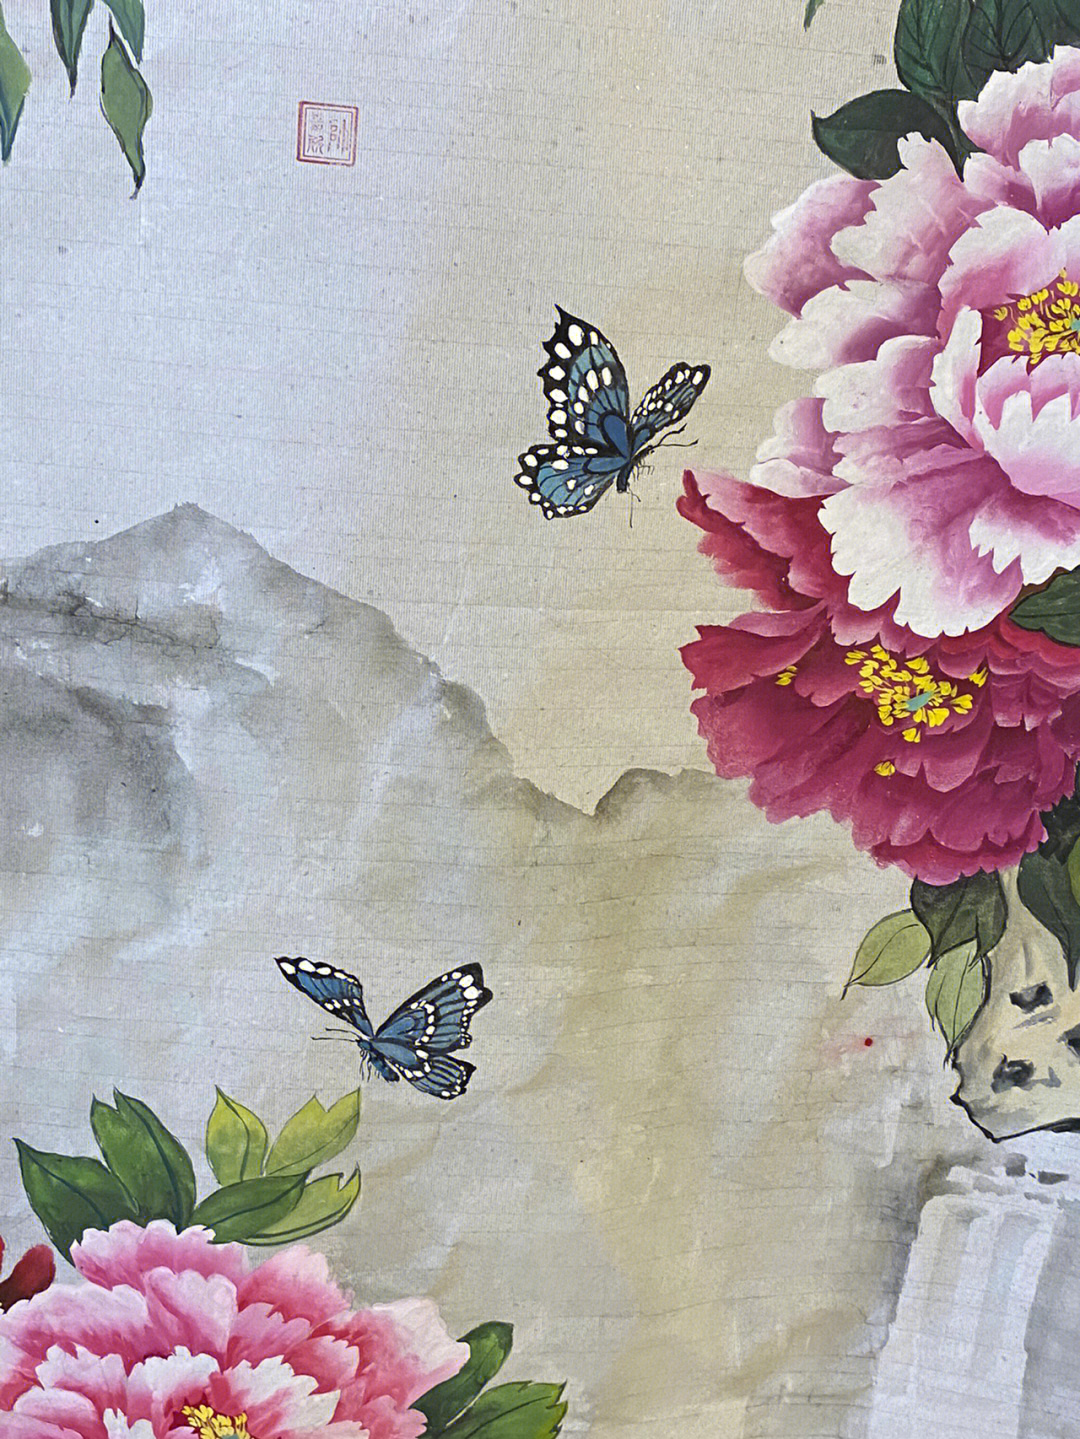 看到一副国画的牡丹 中间的03蝴蝶真的非常吸引我 万花丛中两支蝴蝶